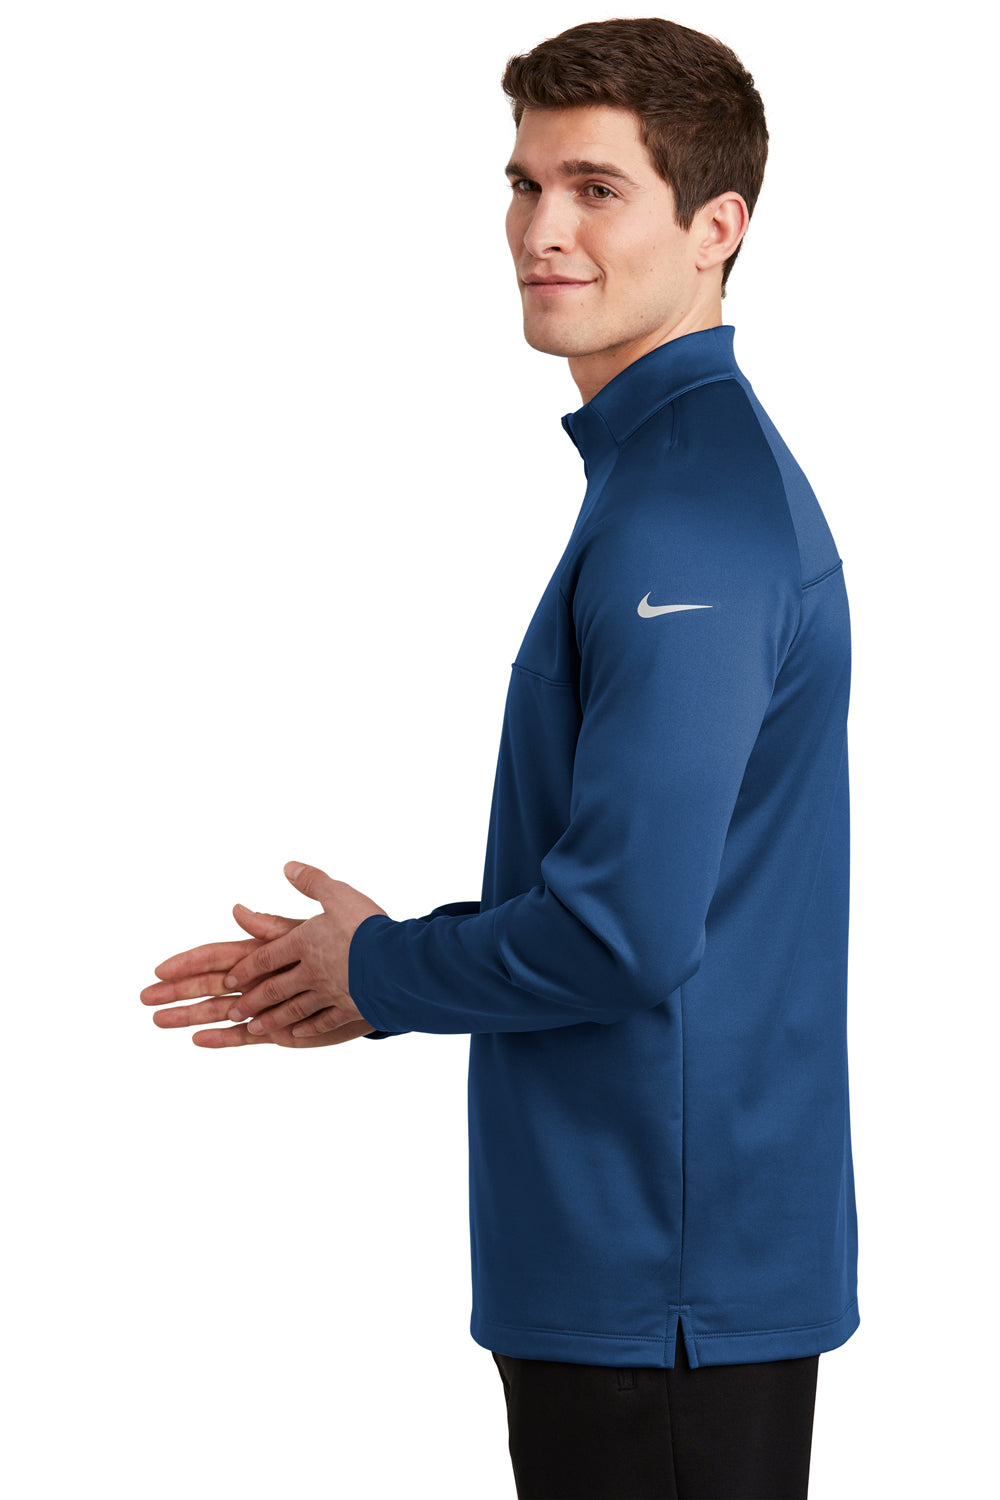 Nike NKAH6254 Mens Therma-Fit Moisture Wicking Fleece 1/4 Zip Sweatshirt Gym Blue Model Side